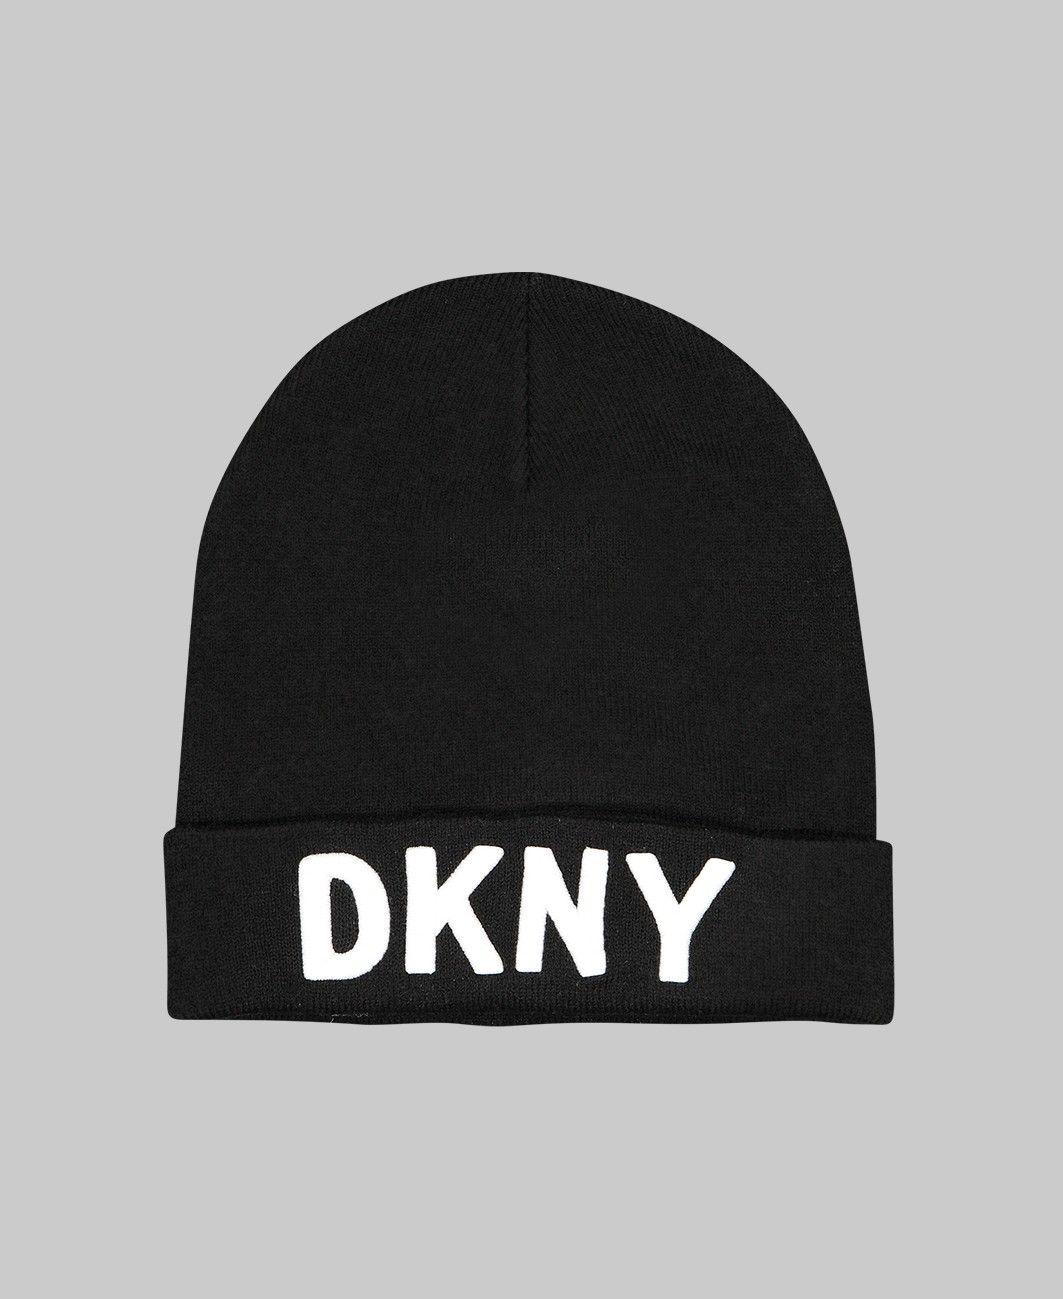 DKNY Logo - DKNY Beanie Hat